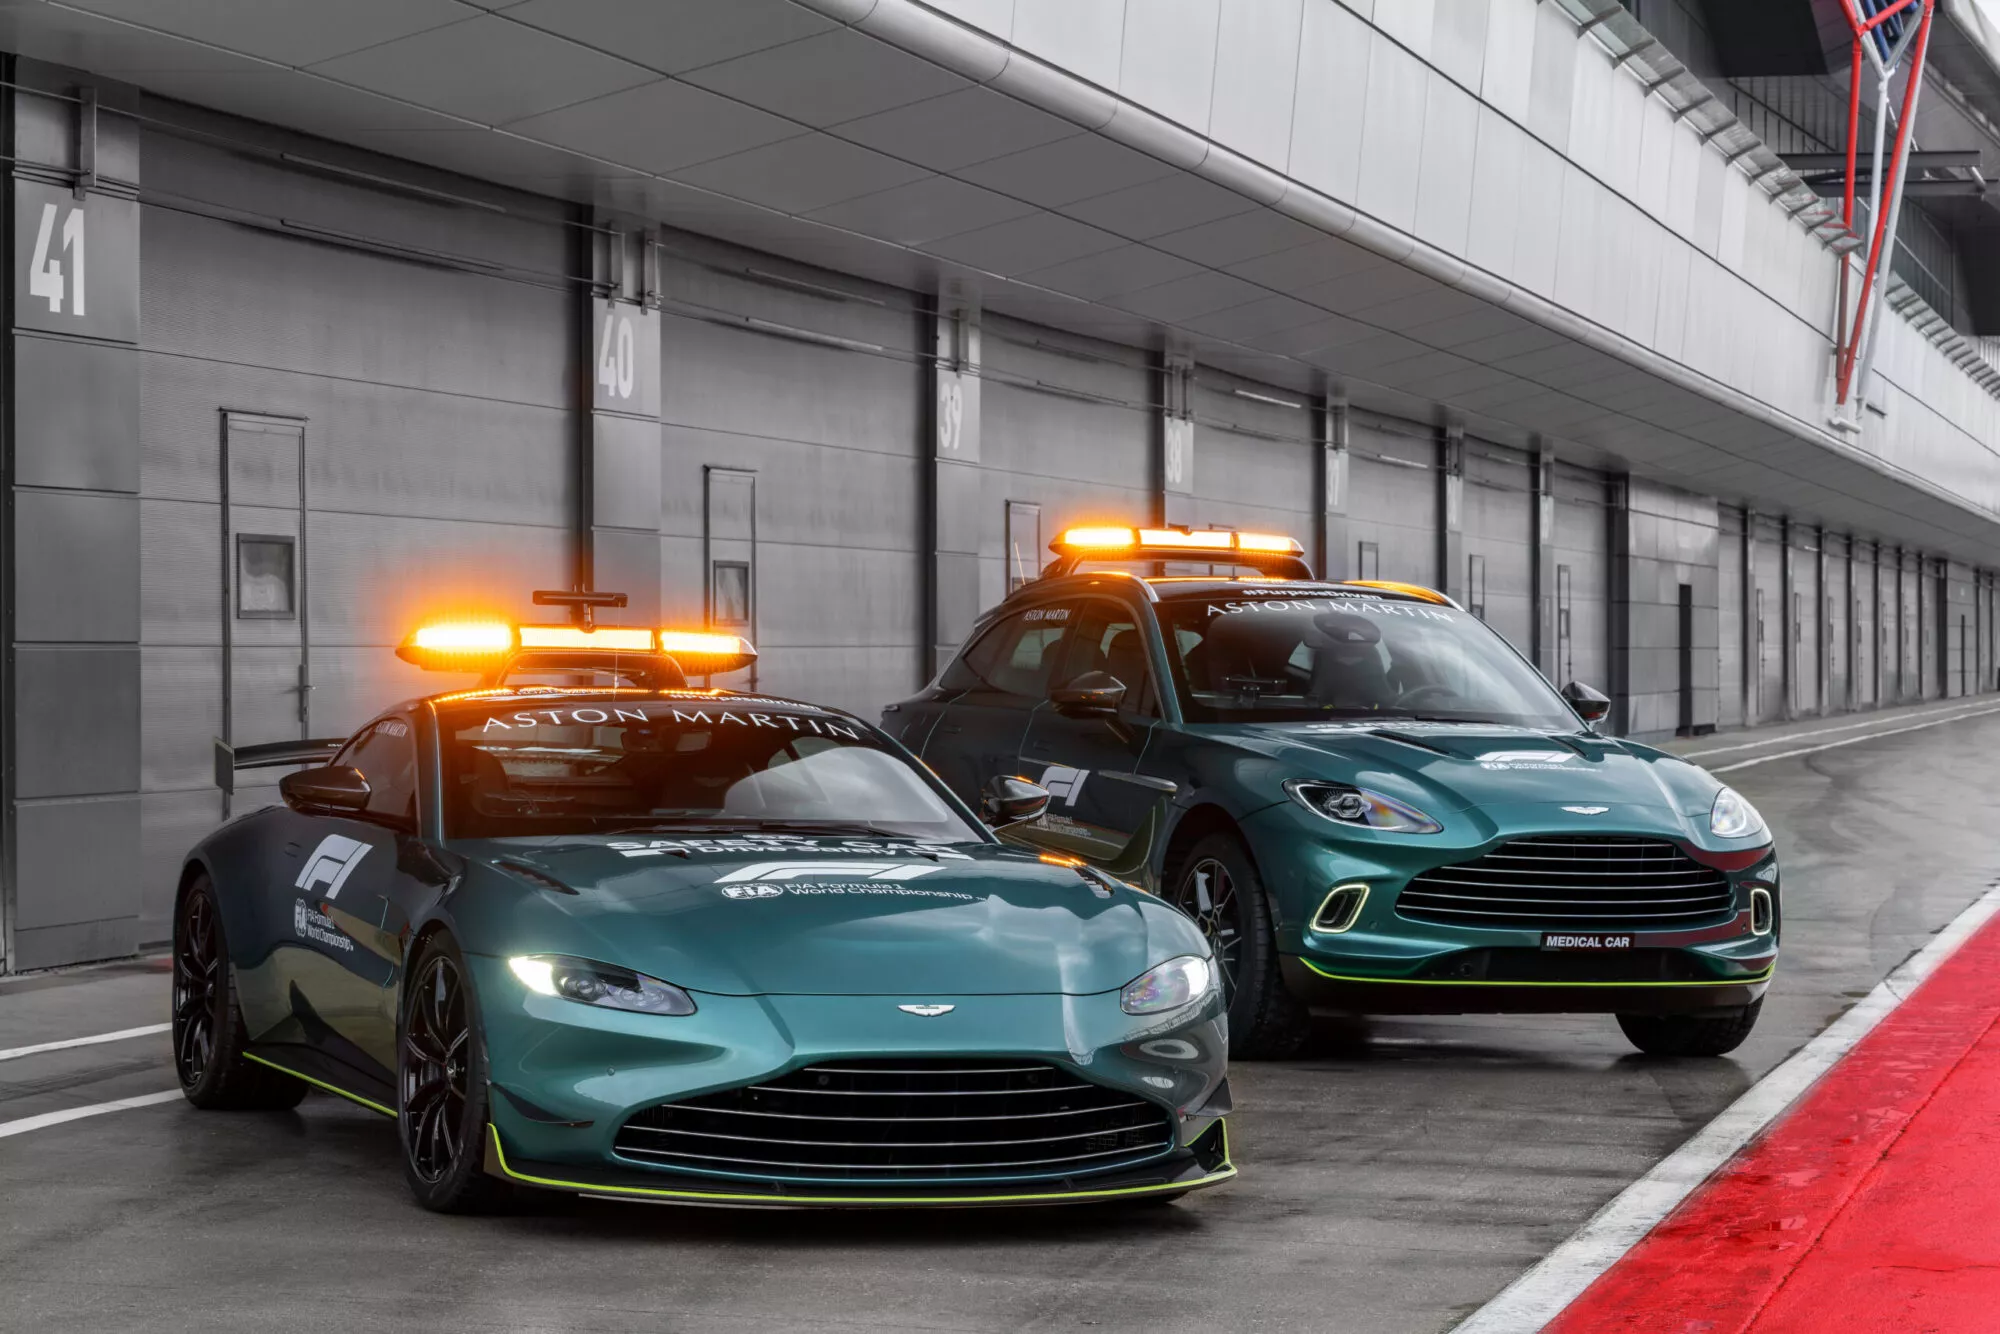 アストンマーティン、フォーミュラ1®のオフィシャル・セーフティーカーに選定 – Aston Martin | Pressroom